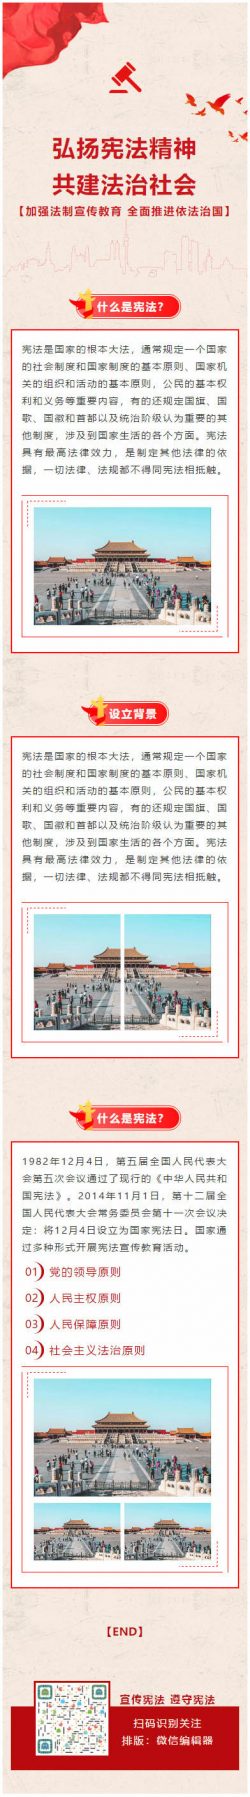 党政国家宪法日微信公众号推送图文模板推文素材